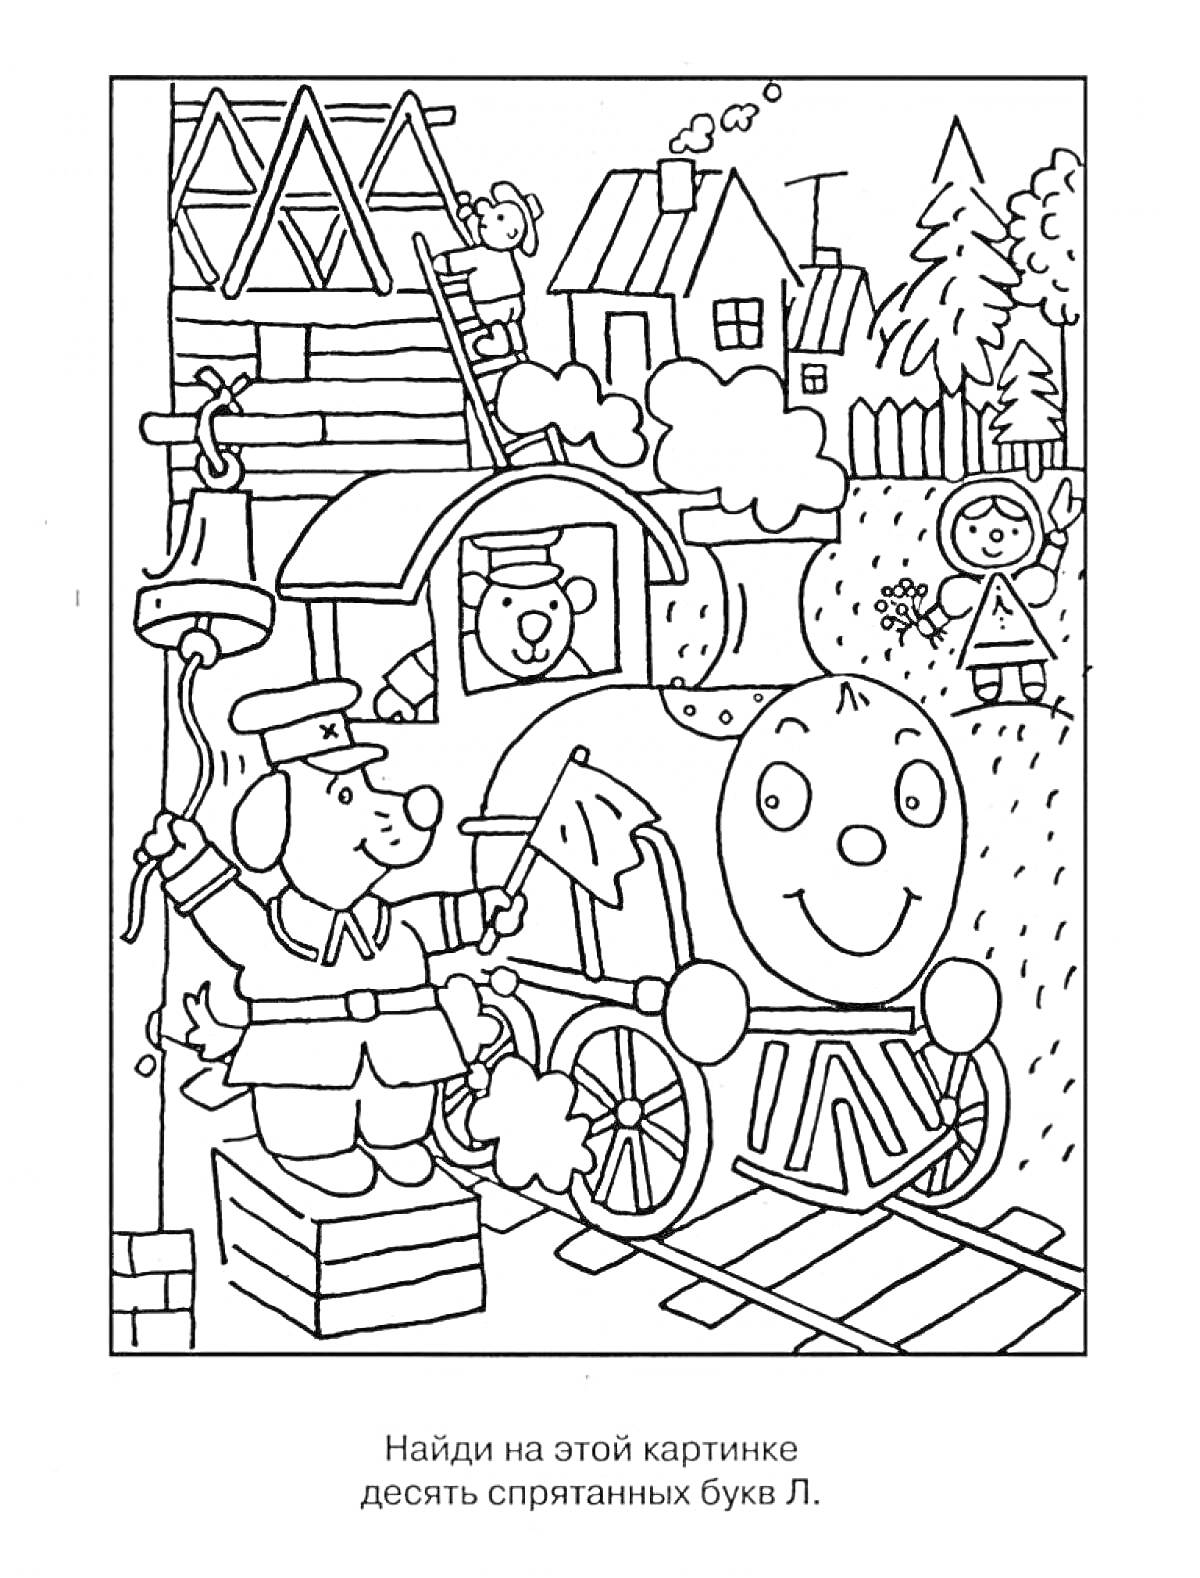 Раскраска с поездом, собаками, мальчиком в шляпе, домами, деревьями и дымом. Найди десять спрятанных букв Л.